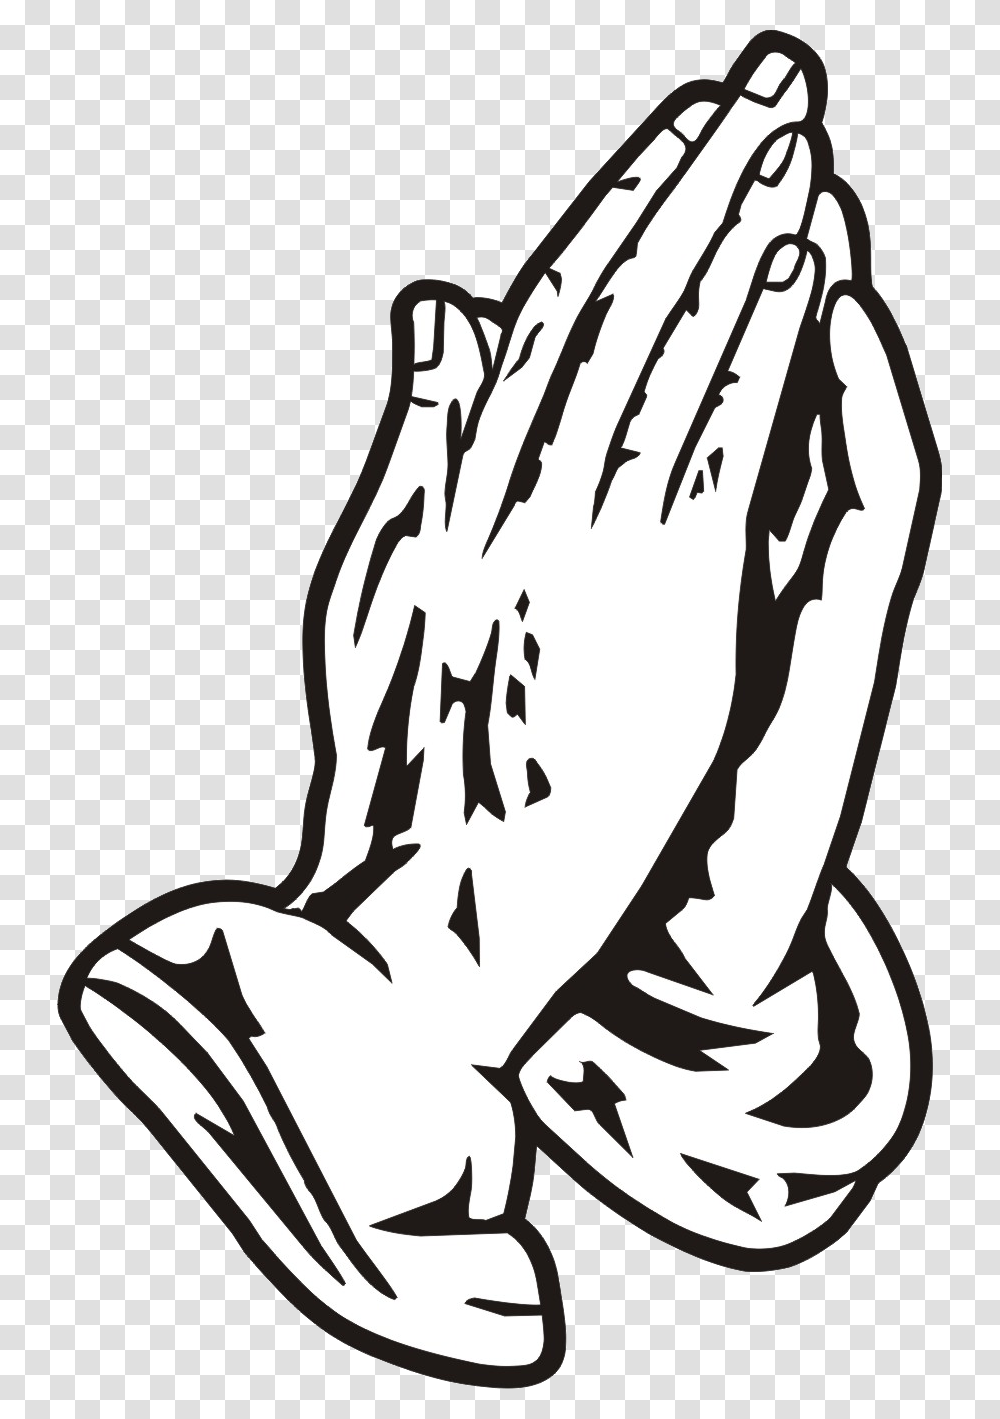 Drake Praying Hands Transparent